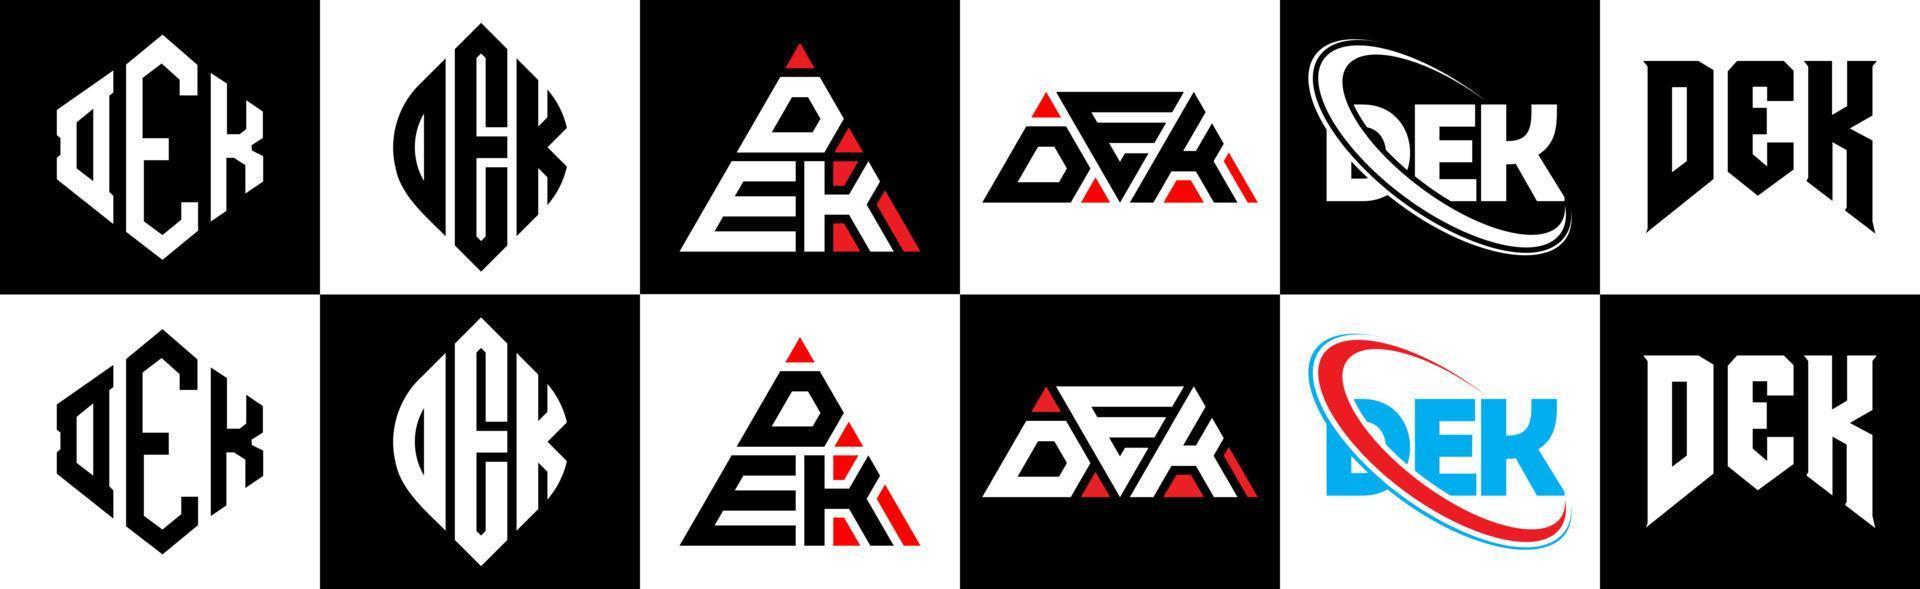 dek-Buchstaben-Logo-Design in sechs Stilen. Dek-Polygon, Kreis, Dreieck, Sechseck, flacher und einfacher Stil mit schwarz-weißem Buchstabenlogo in einer Zeichenfläche. dek minimalistisches und klassisches Logo vektor